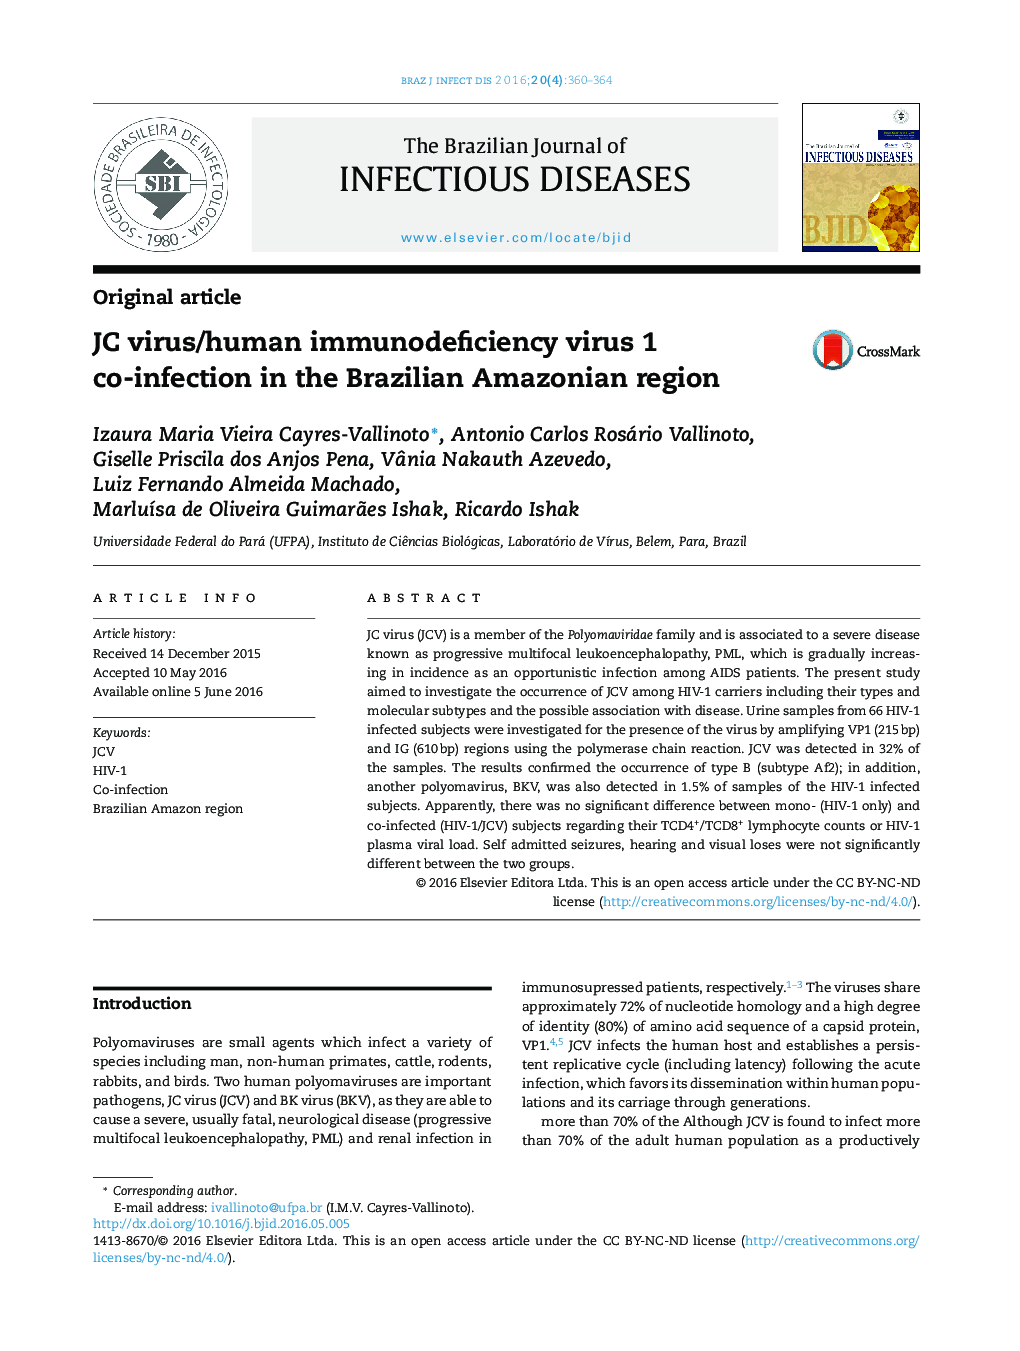 عفونت مشترک ویروس نقص ایمنی انسانی/ویروس JC در منطقه آمازون برزیل